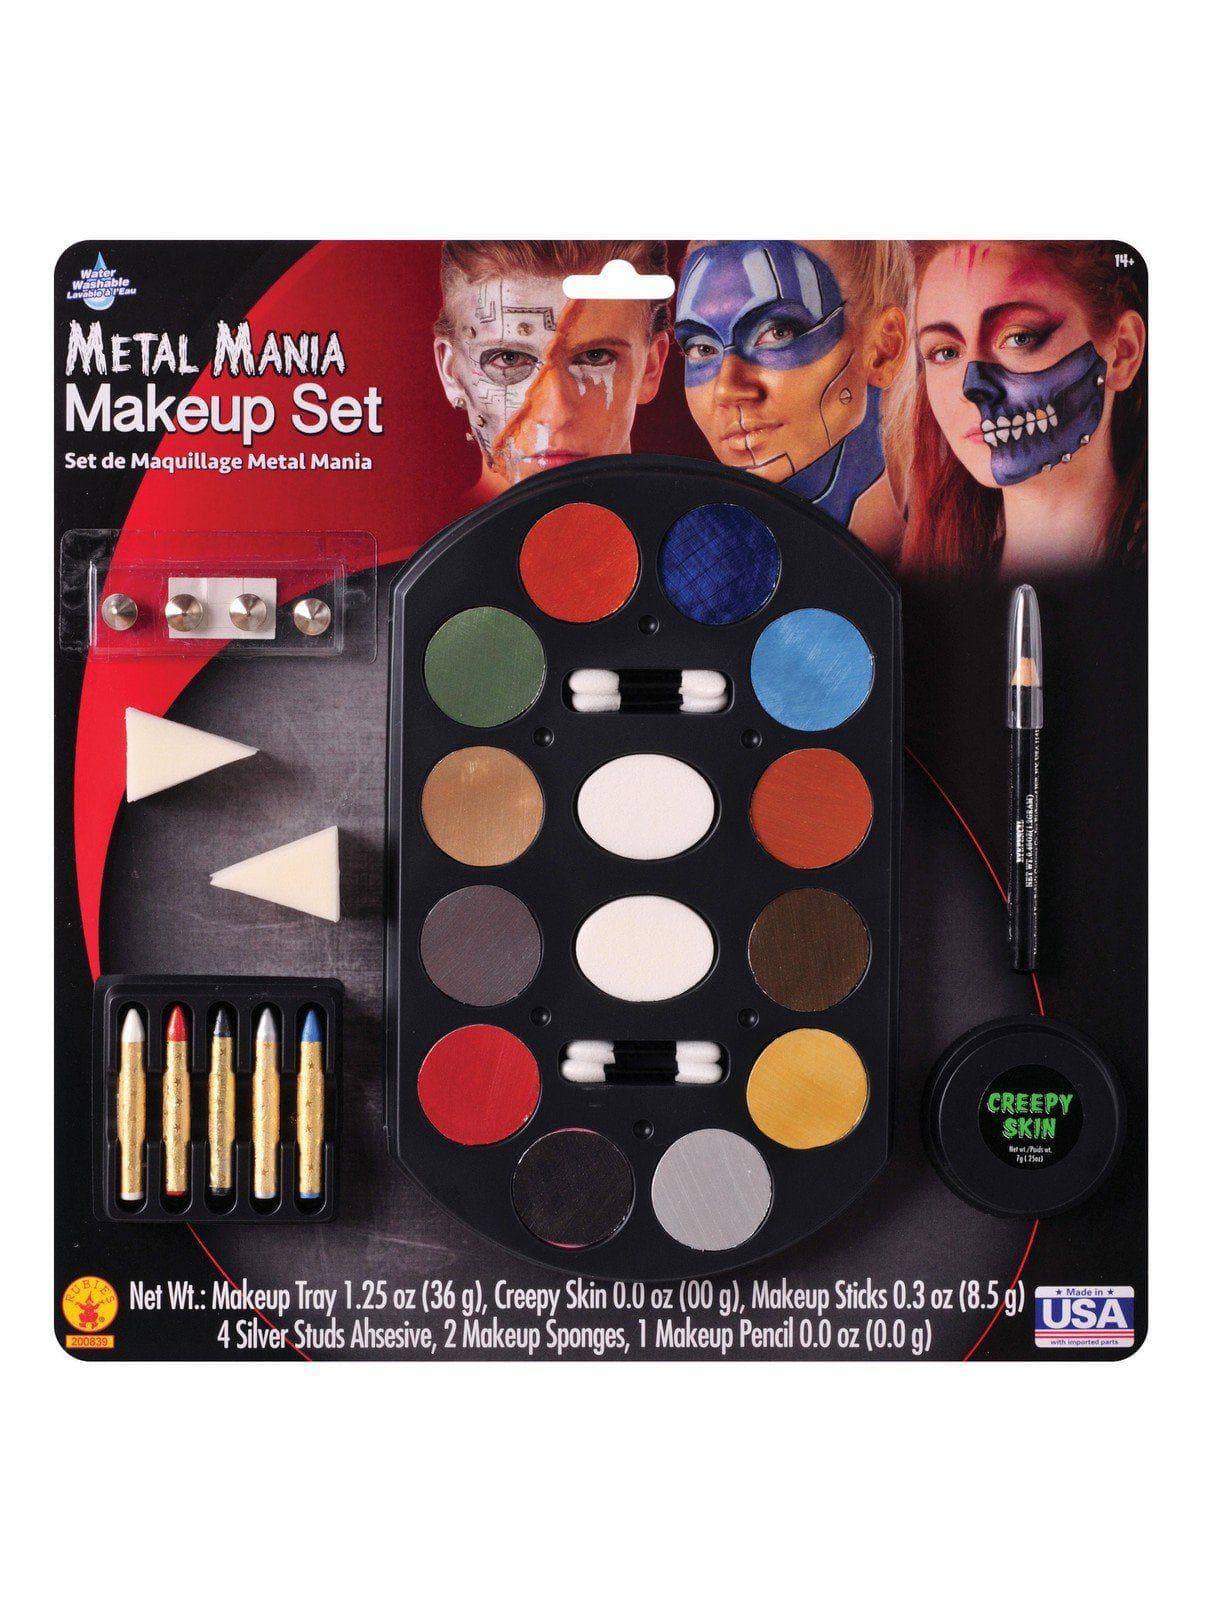 Metal Mania Makeup Kit - costumes.com